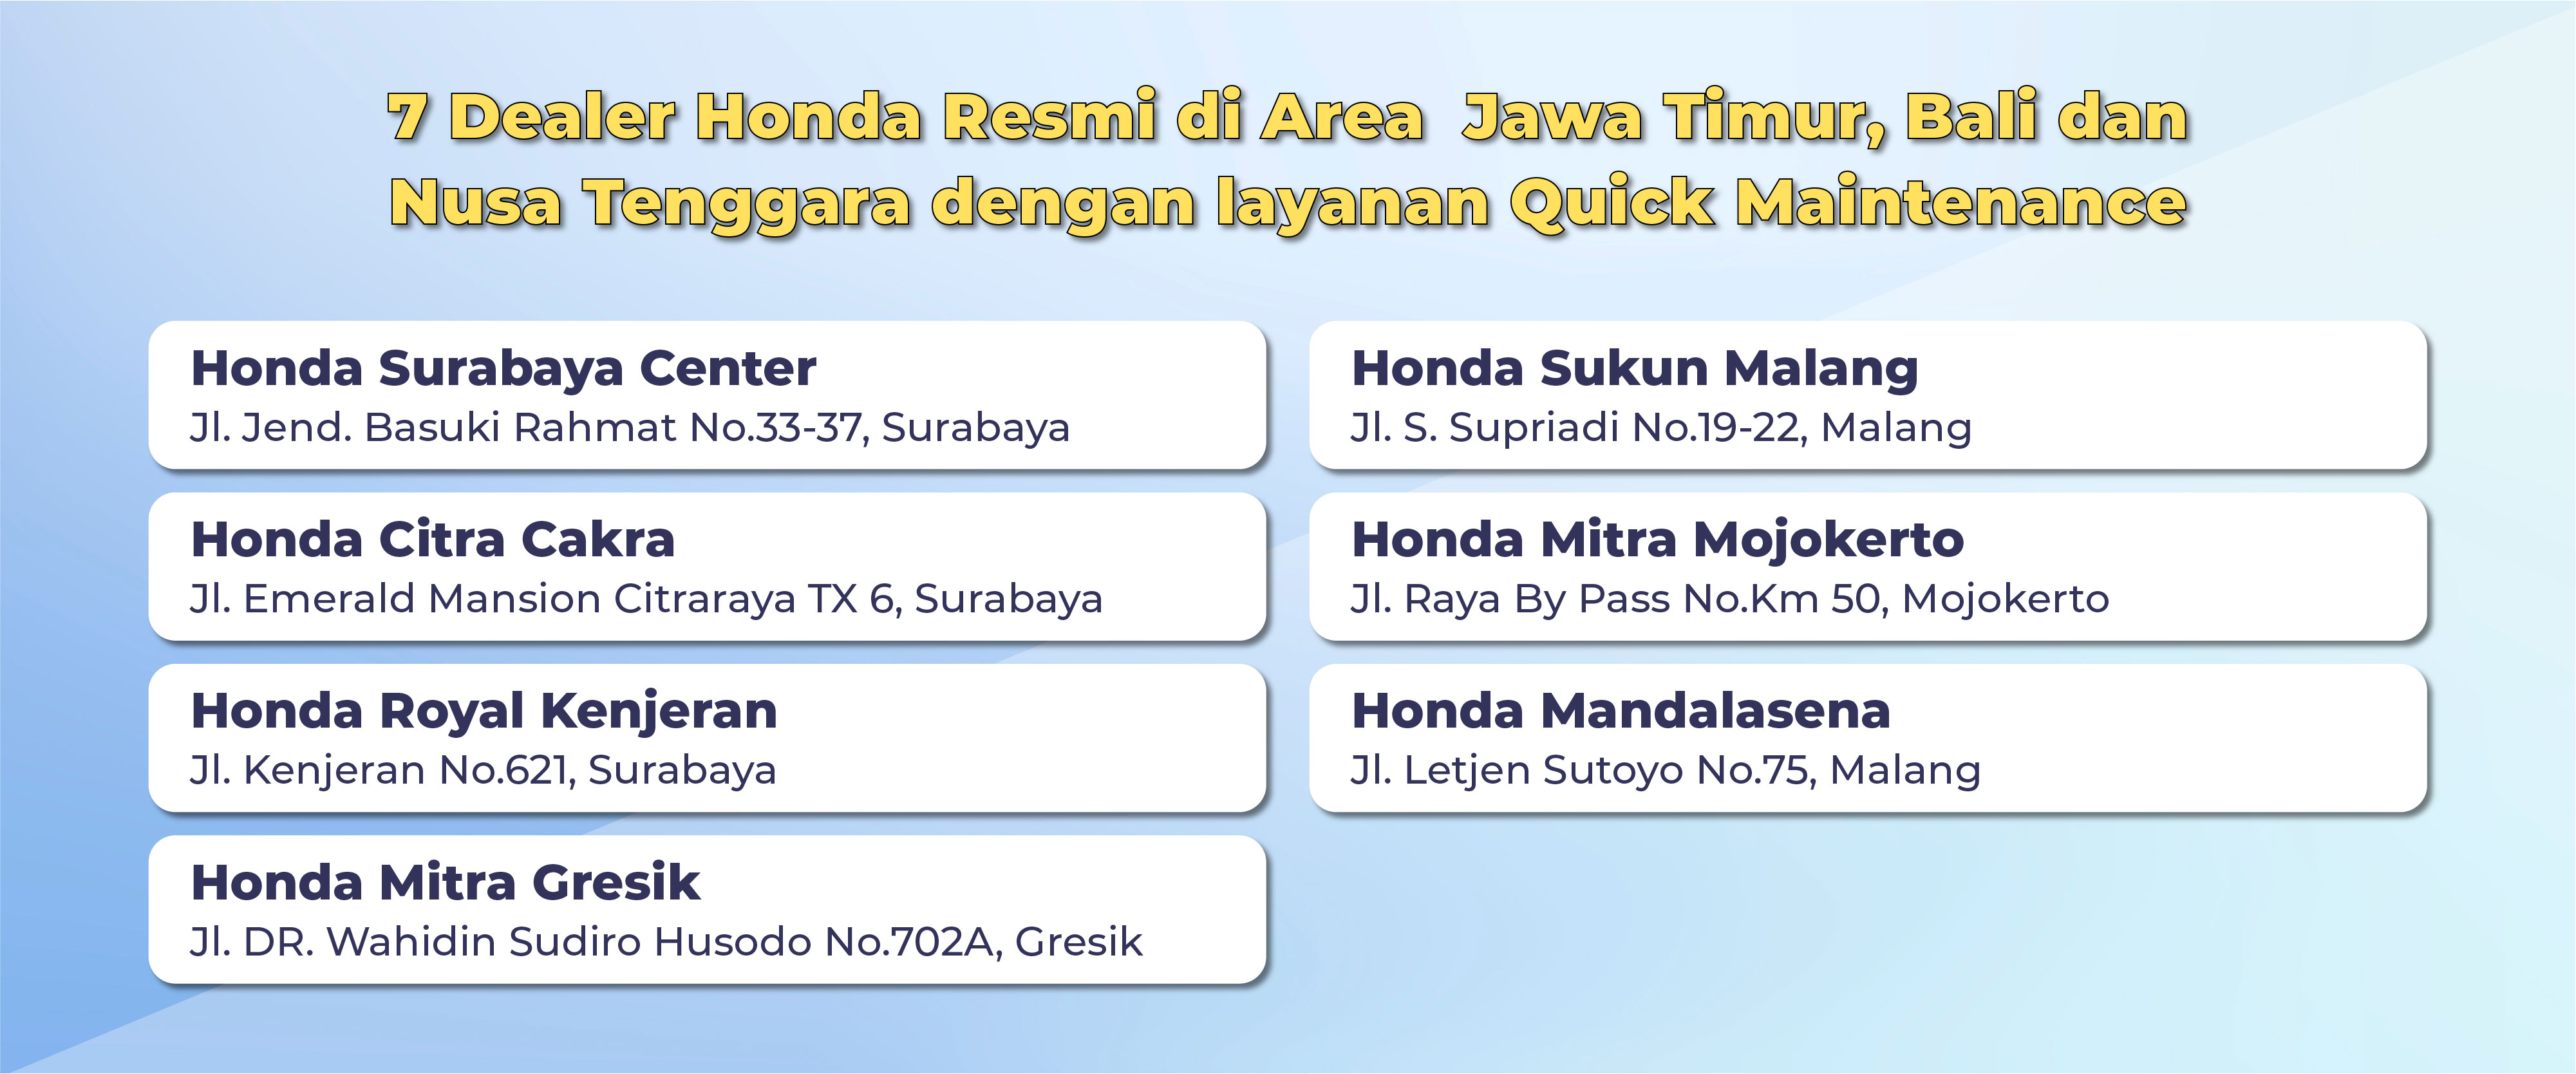 7 Dealer Honda Resmi di Area Jawa Timur, Bali dan Nusa Tenggara dengan Layanan Quick Maintenance